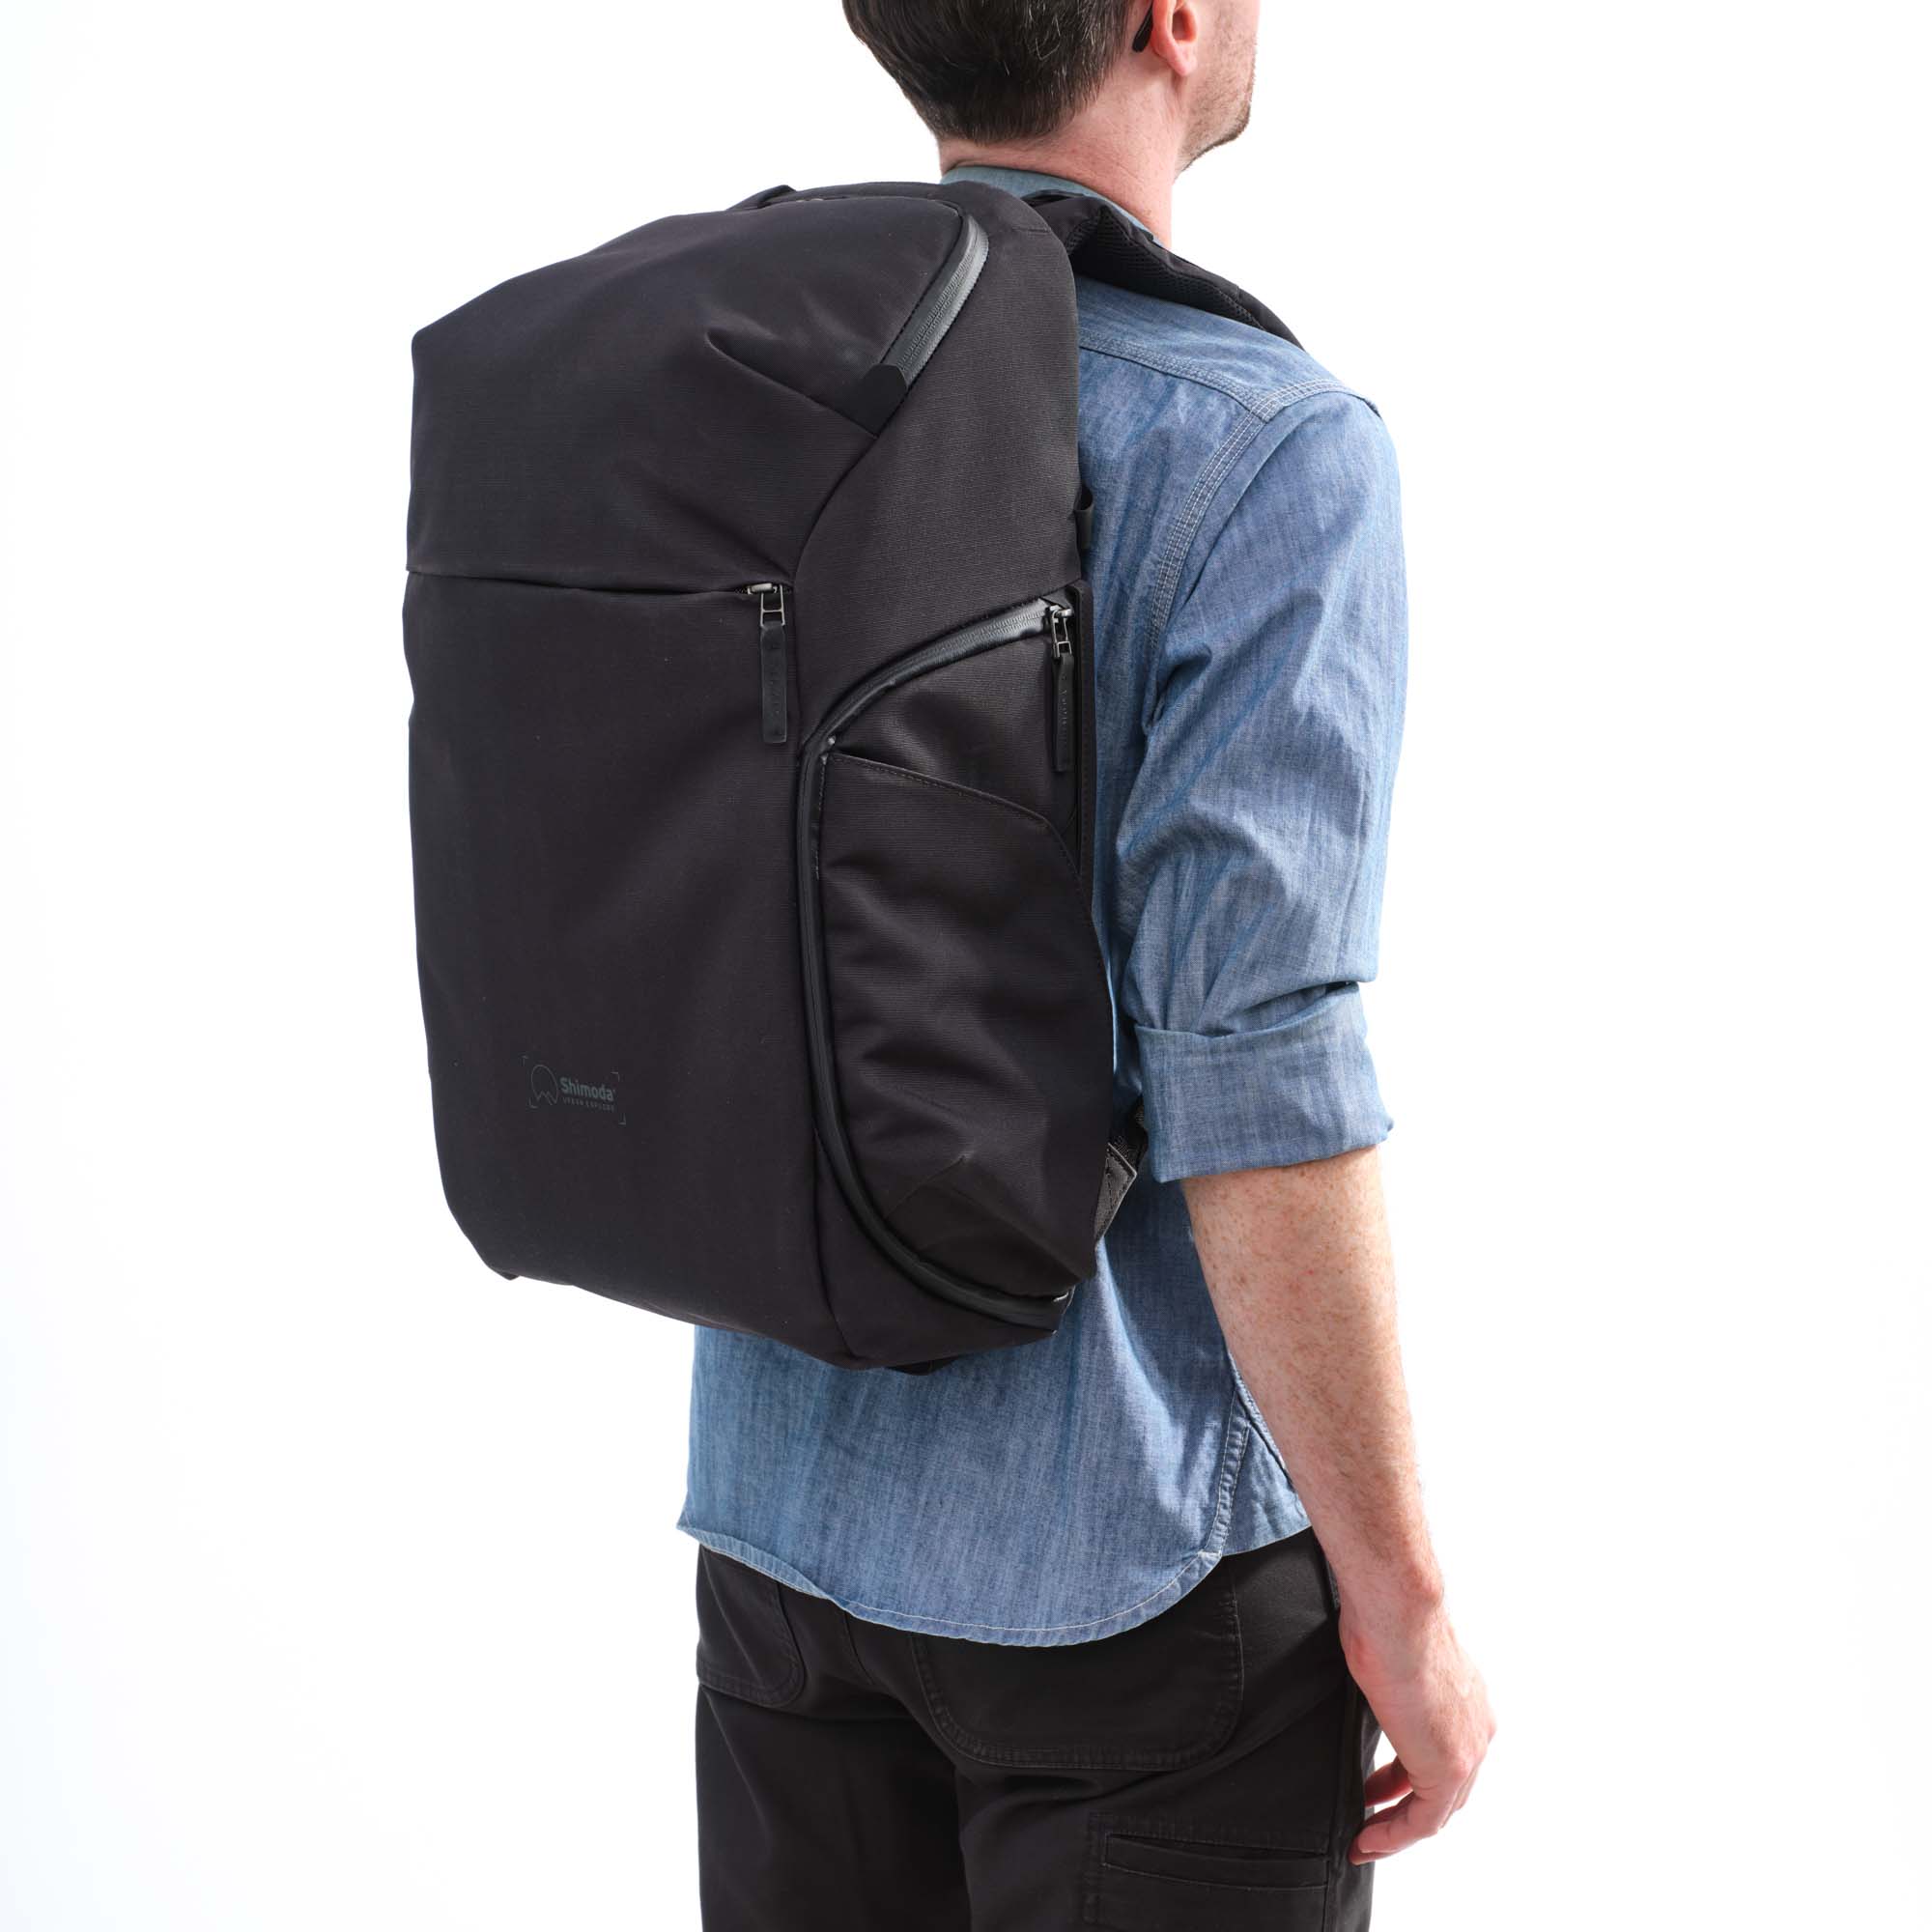 Shimoda Designs Explore 30 Rucksack in Anthrazit, Lifestyle Foto des Rucksacks auf einer Person